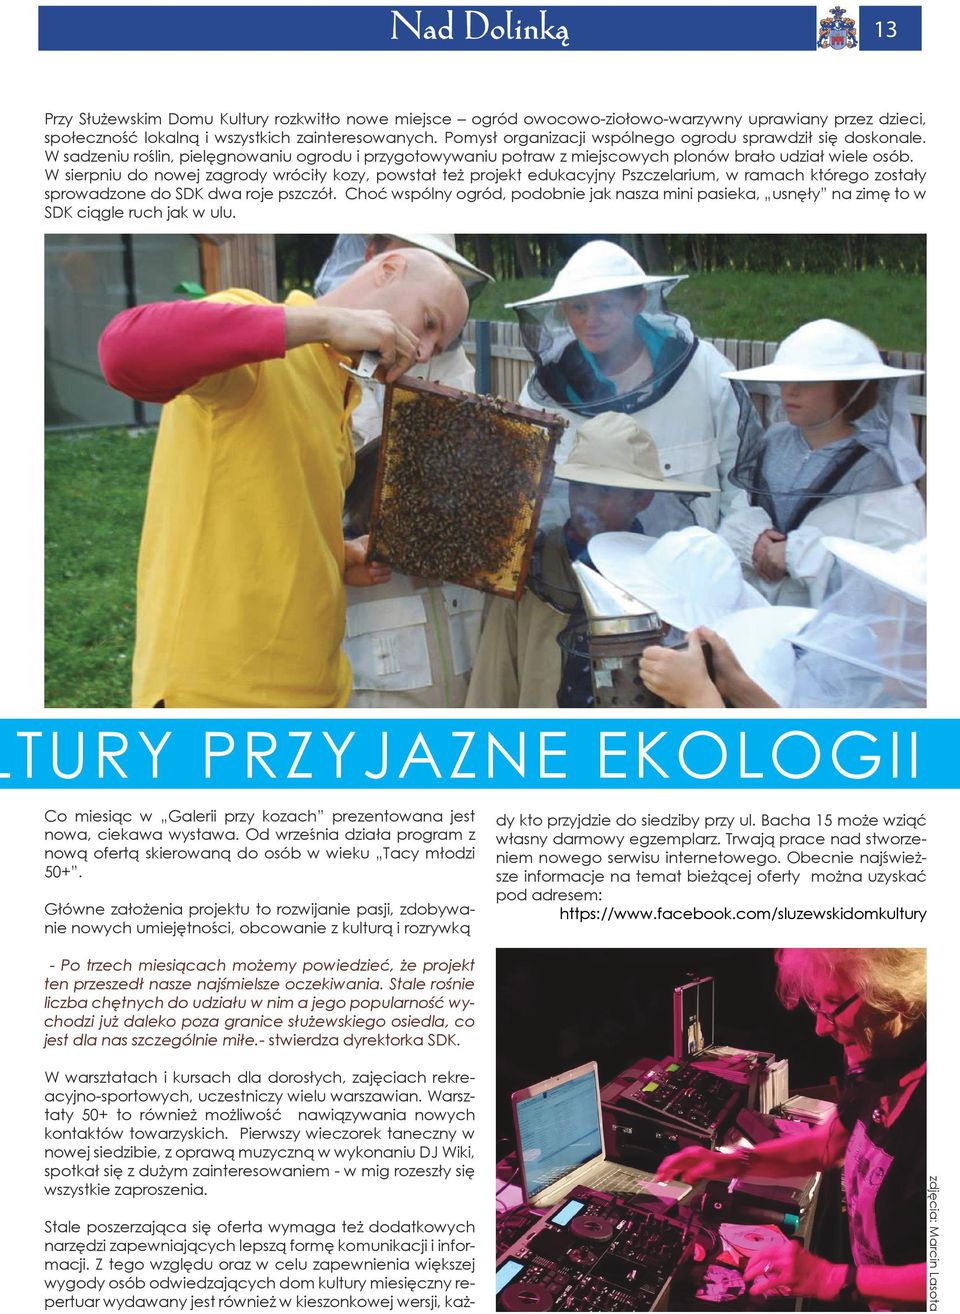 W sierpniu do nowej zagrody wróciły kozy, powstał też projekt edukacyjny Pszczelarium, w ramach którego zostały sprowadzone do SDK dwa roje pszczół.